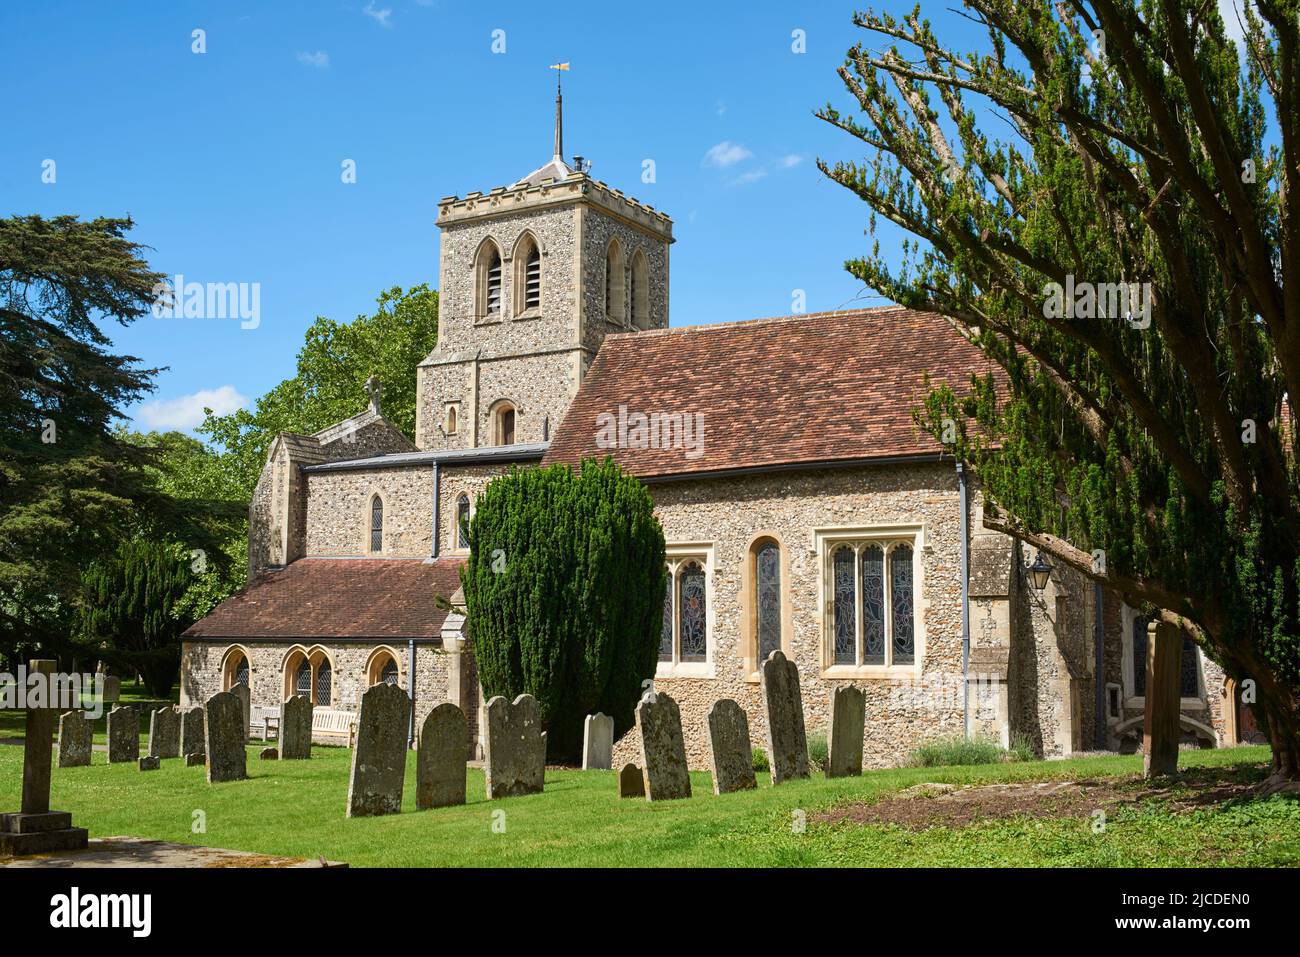 La antigua iglesia de San Miguel de los siglos 10th y 11th en la ciudad de St Albans, Hertfordshire, sur de Inglaterra Foto de stock